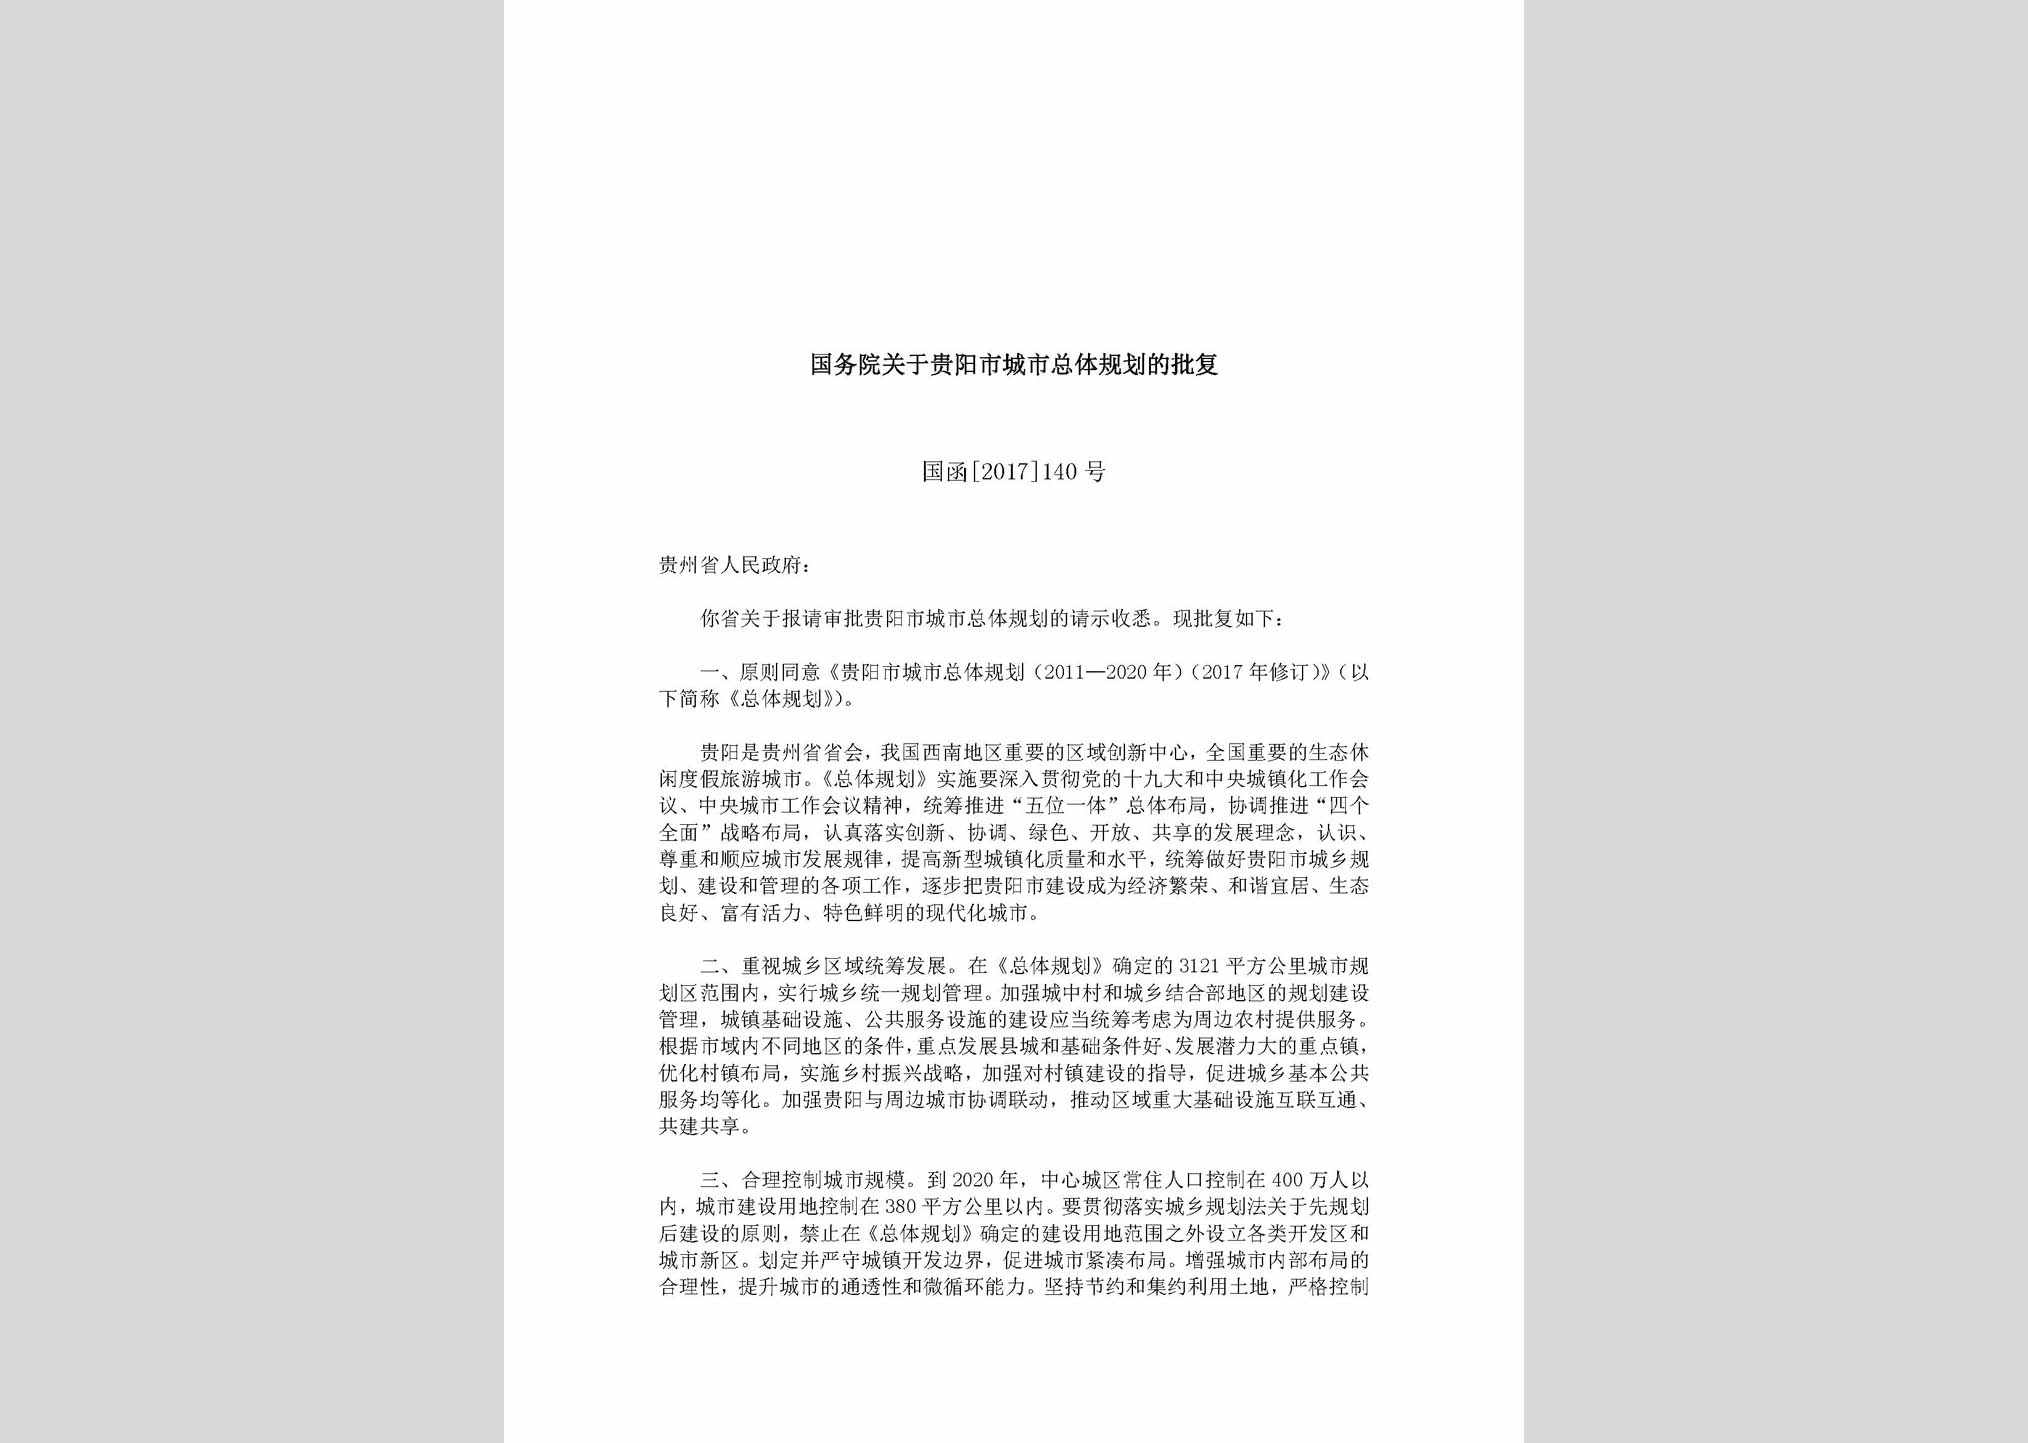 国函[2017]140号：国务院关于贵阳市城市总体规划的批复